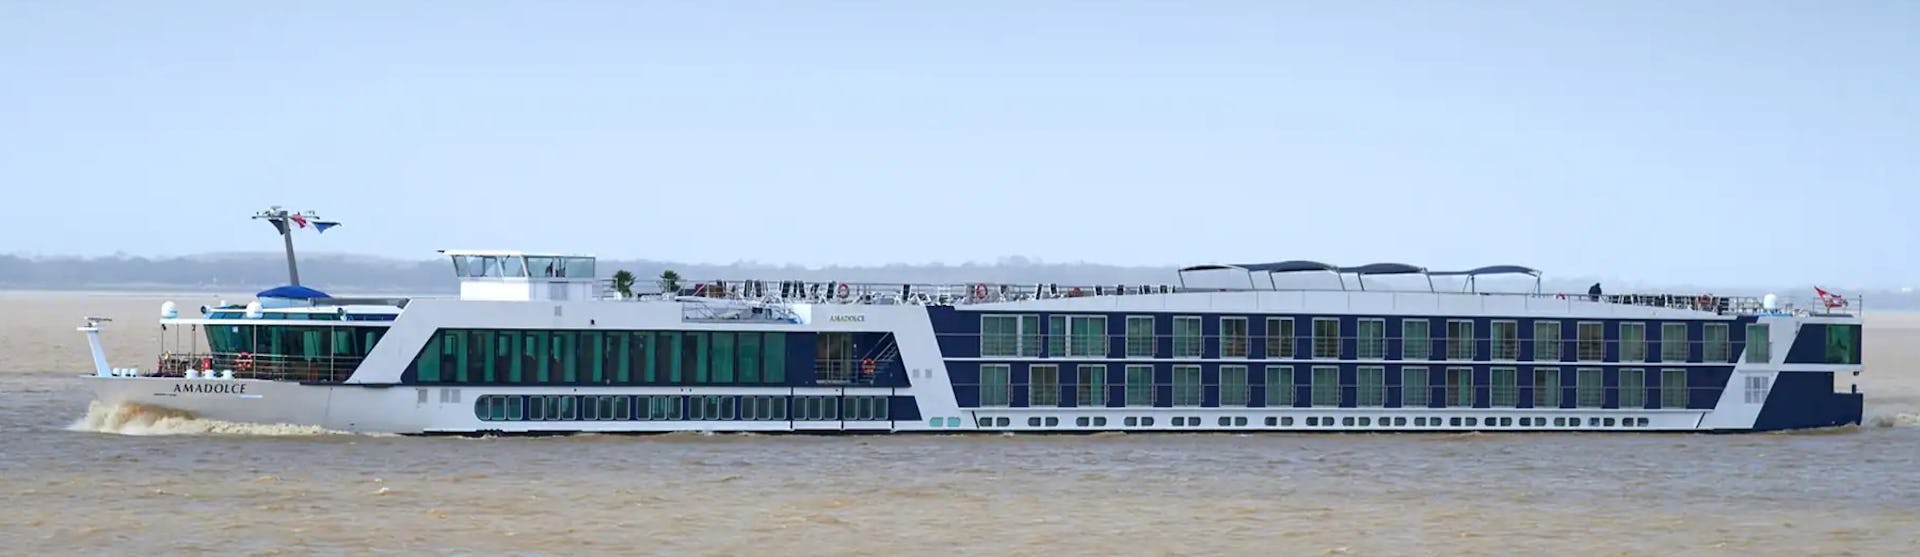 Flusskreuzfahrtschiff AmaDolce während der Fahrt